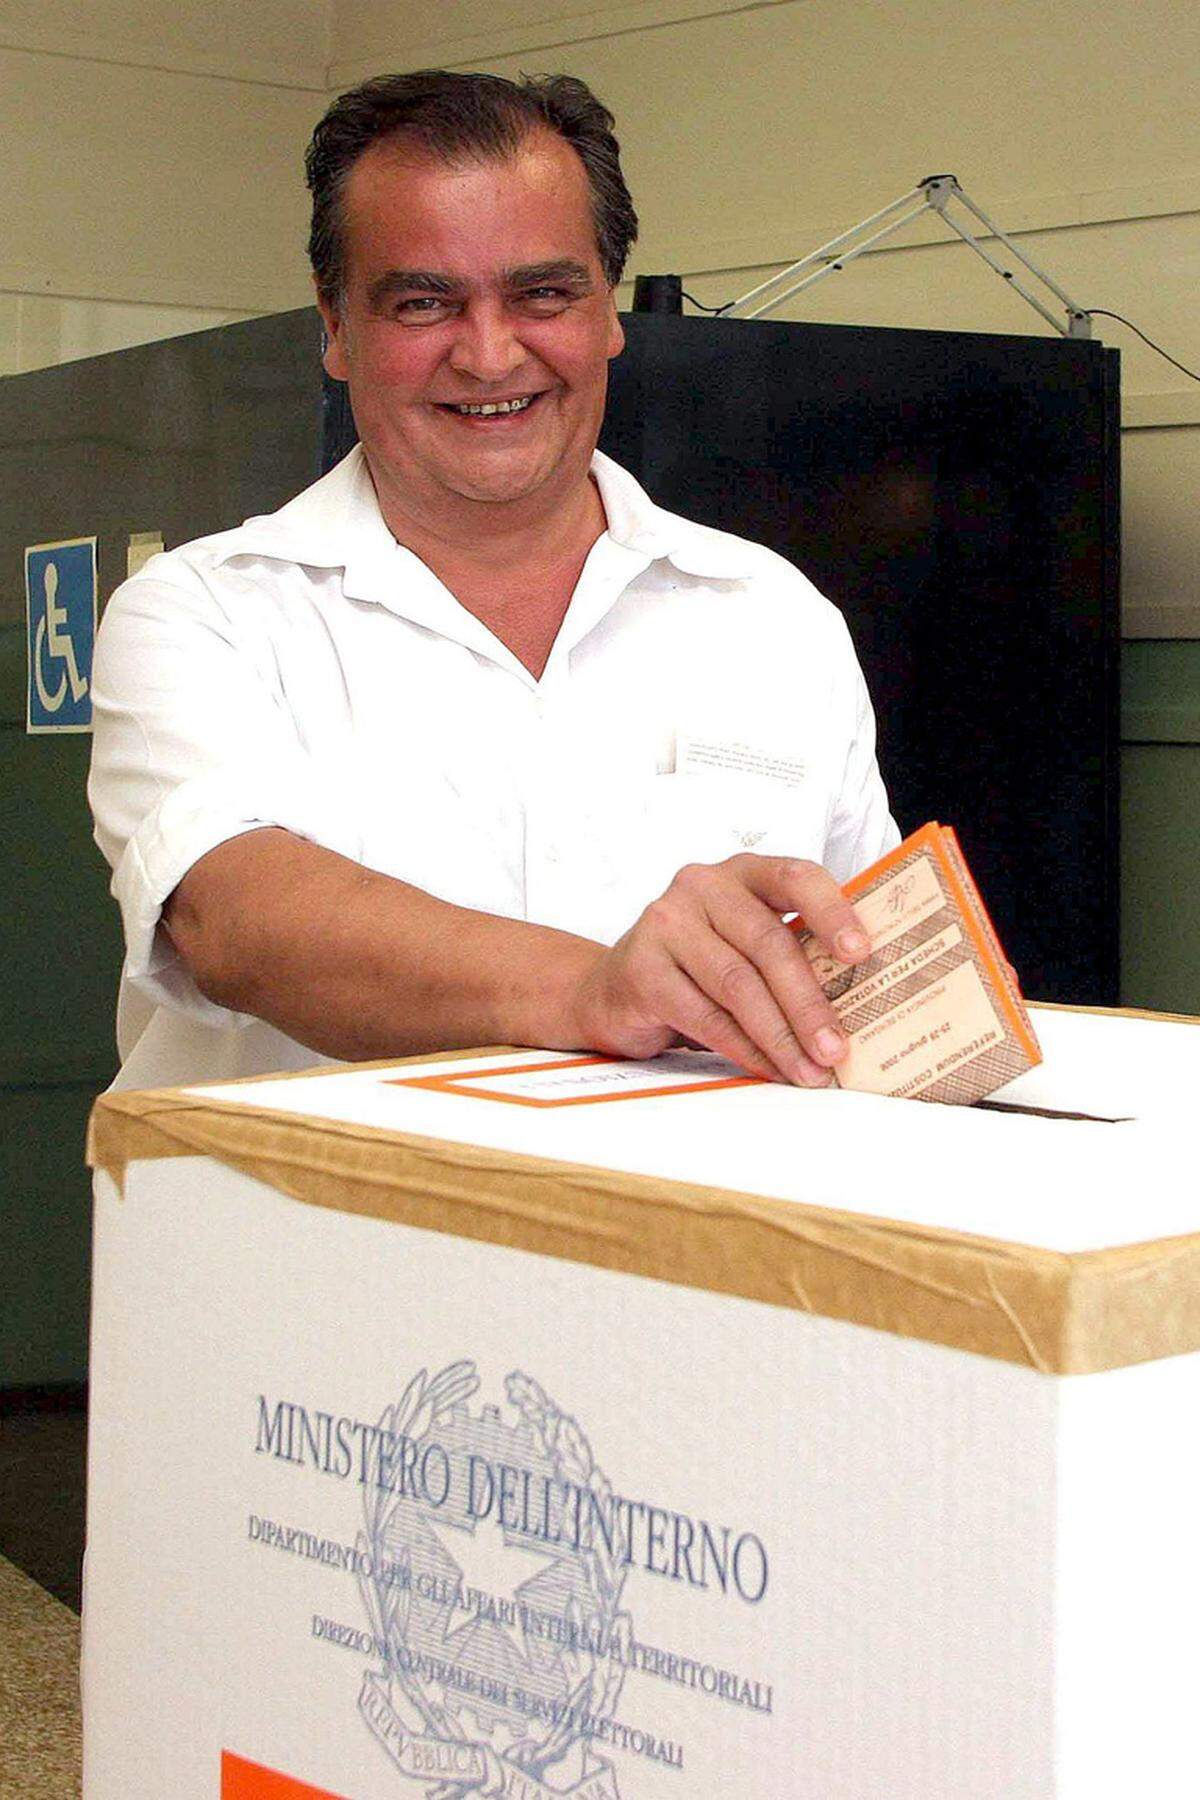 Calderoli ist für rassistische Äußerungen bekannt. So musste er 2006 als Reformminister unter Silvio Berlusconi zurücktreten, weil er in einem T-Shirt mit Mohammed-Aufdruck zu einer Talk-Show erschienen war.